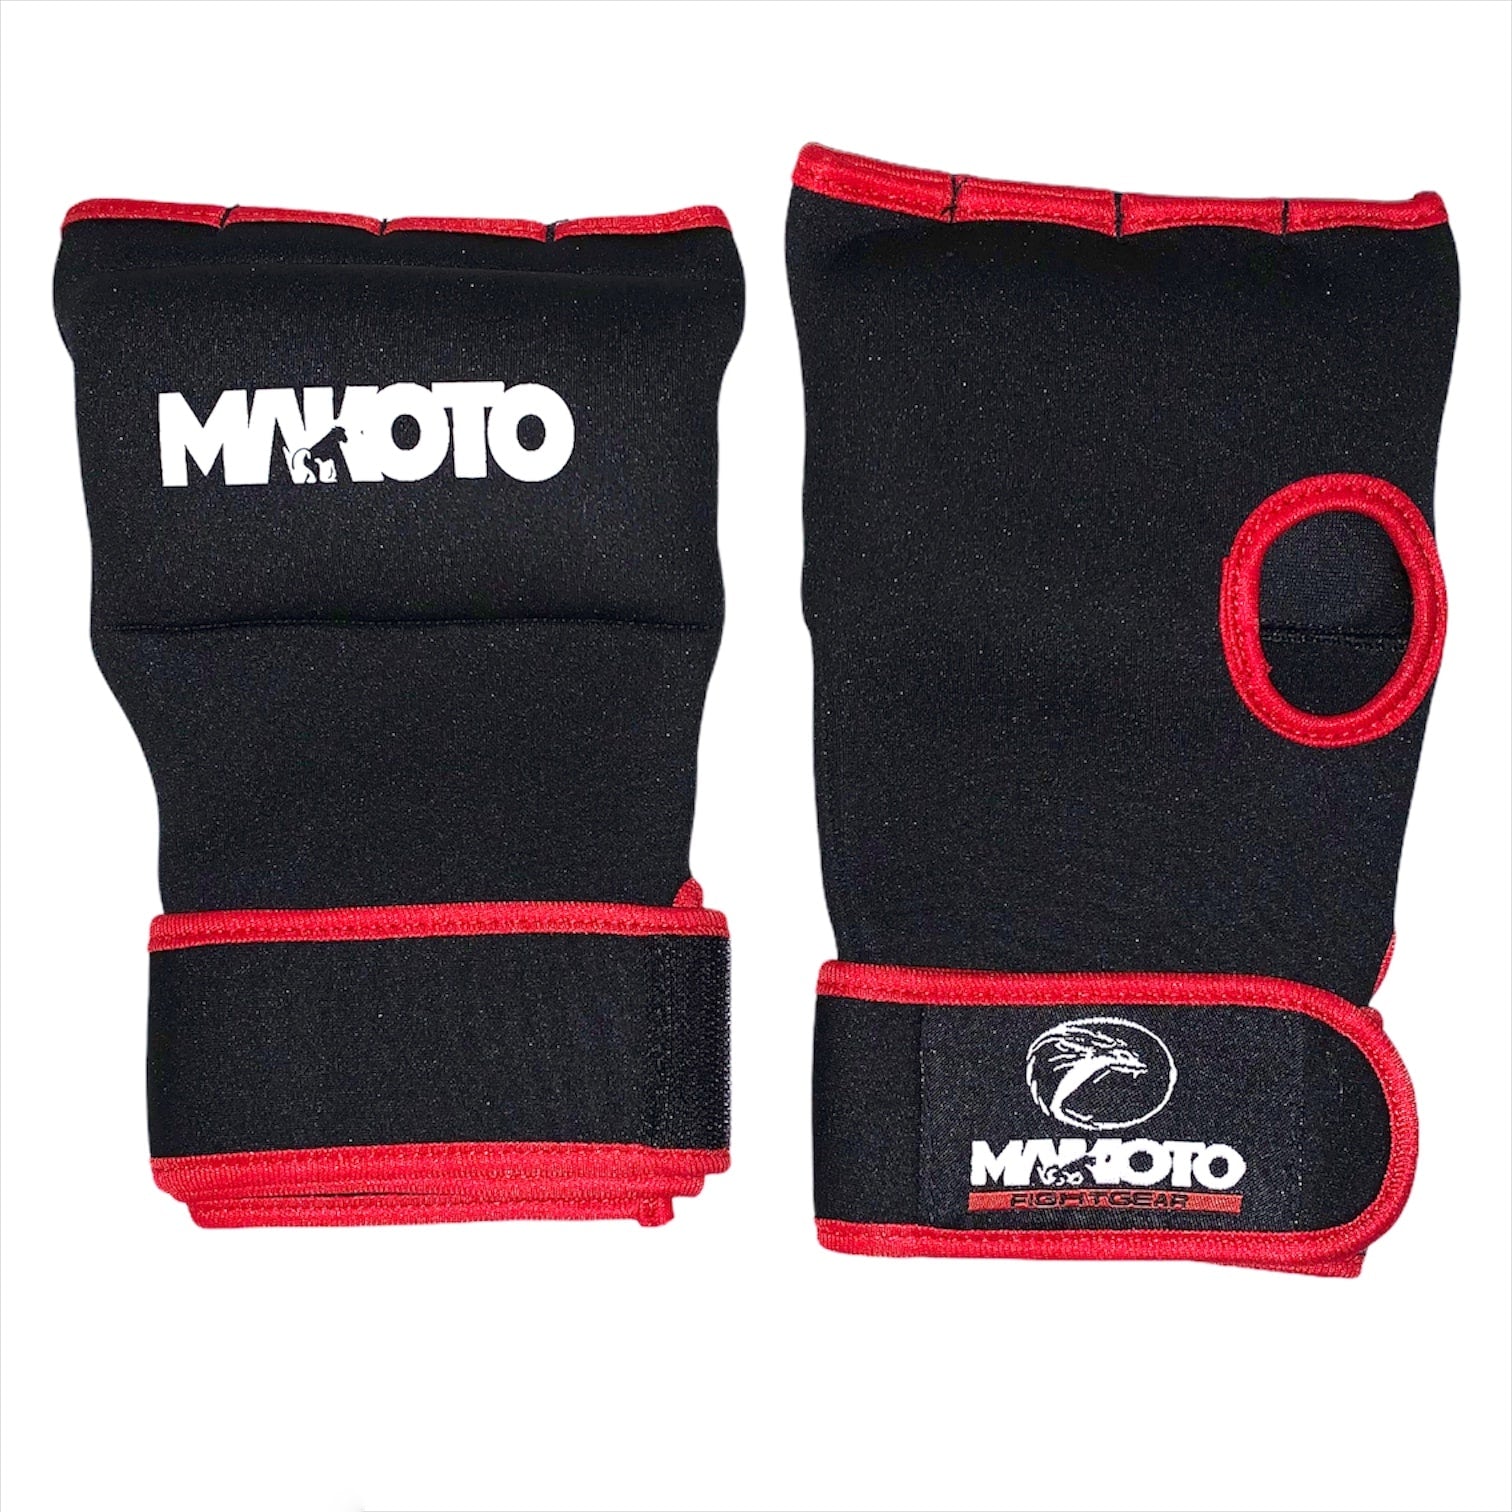 Vendas Rapidas tipo guante para Boxeo Makoto - Negro - Poliester